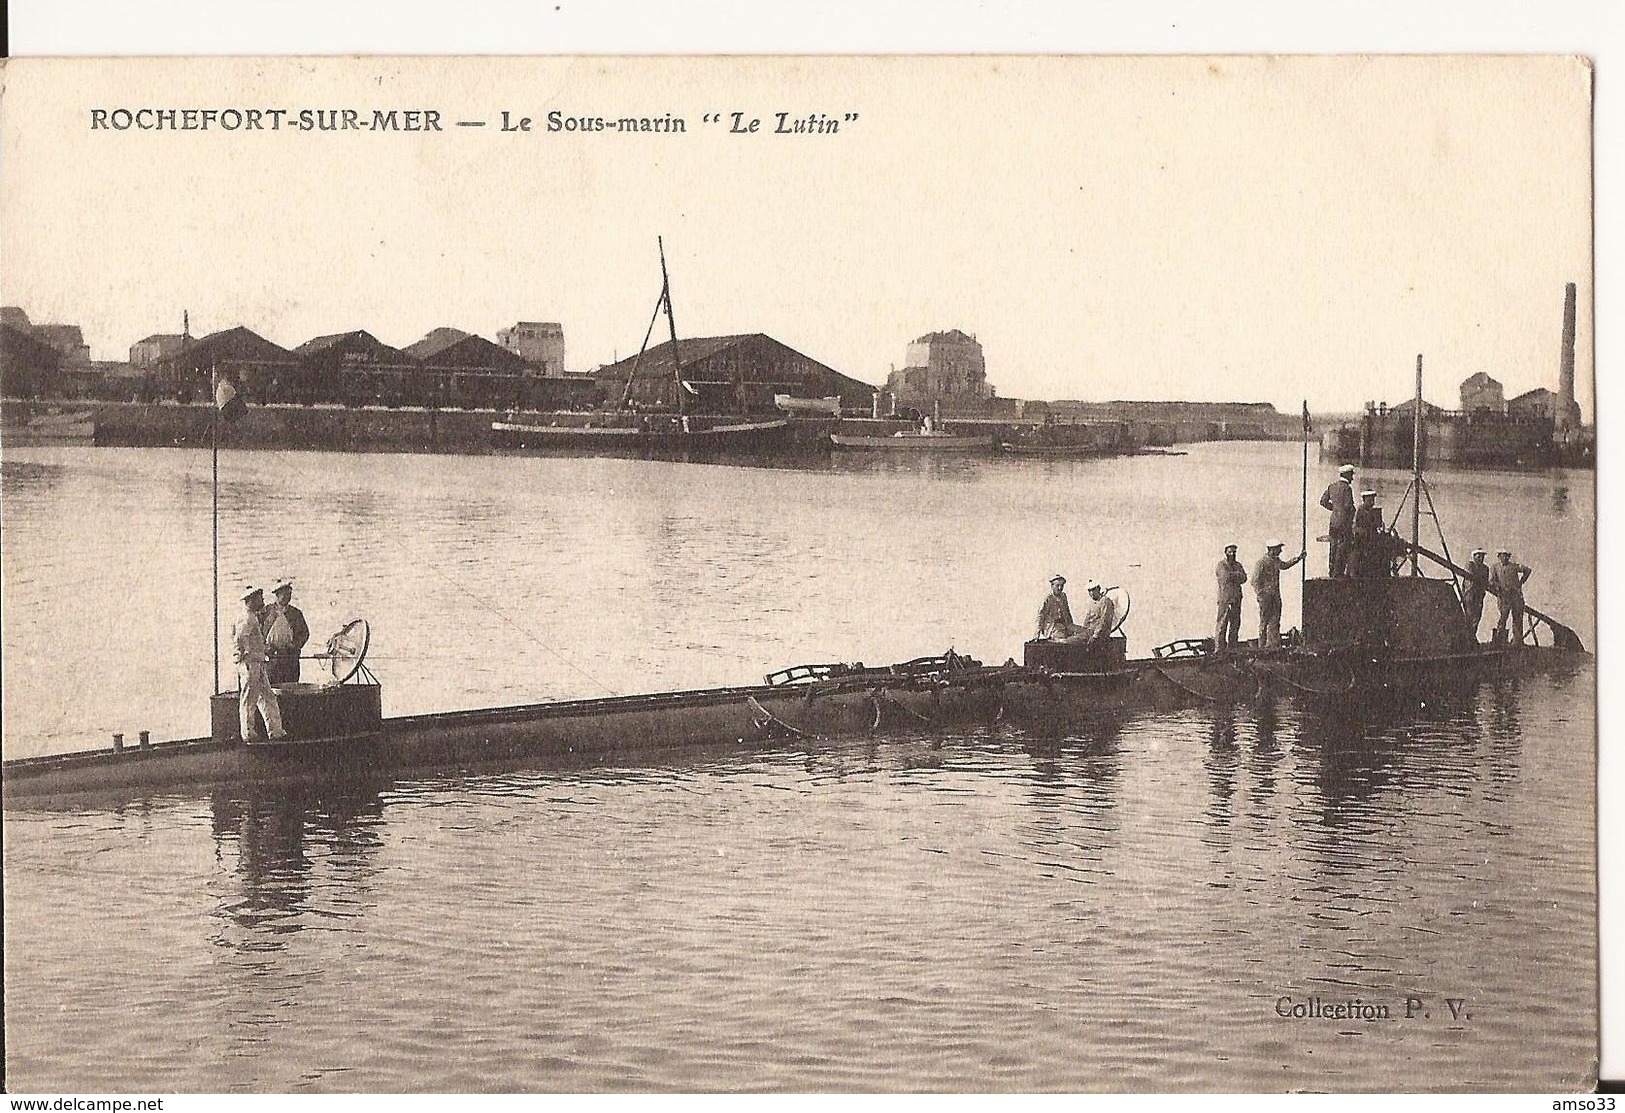 9346. CPA MARINE FRANCAISE. ROCHEFORT SUR MER. LA SOUS-MARIN "LE LUTIN" 1905 - Matériel